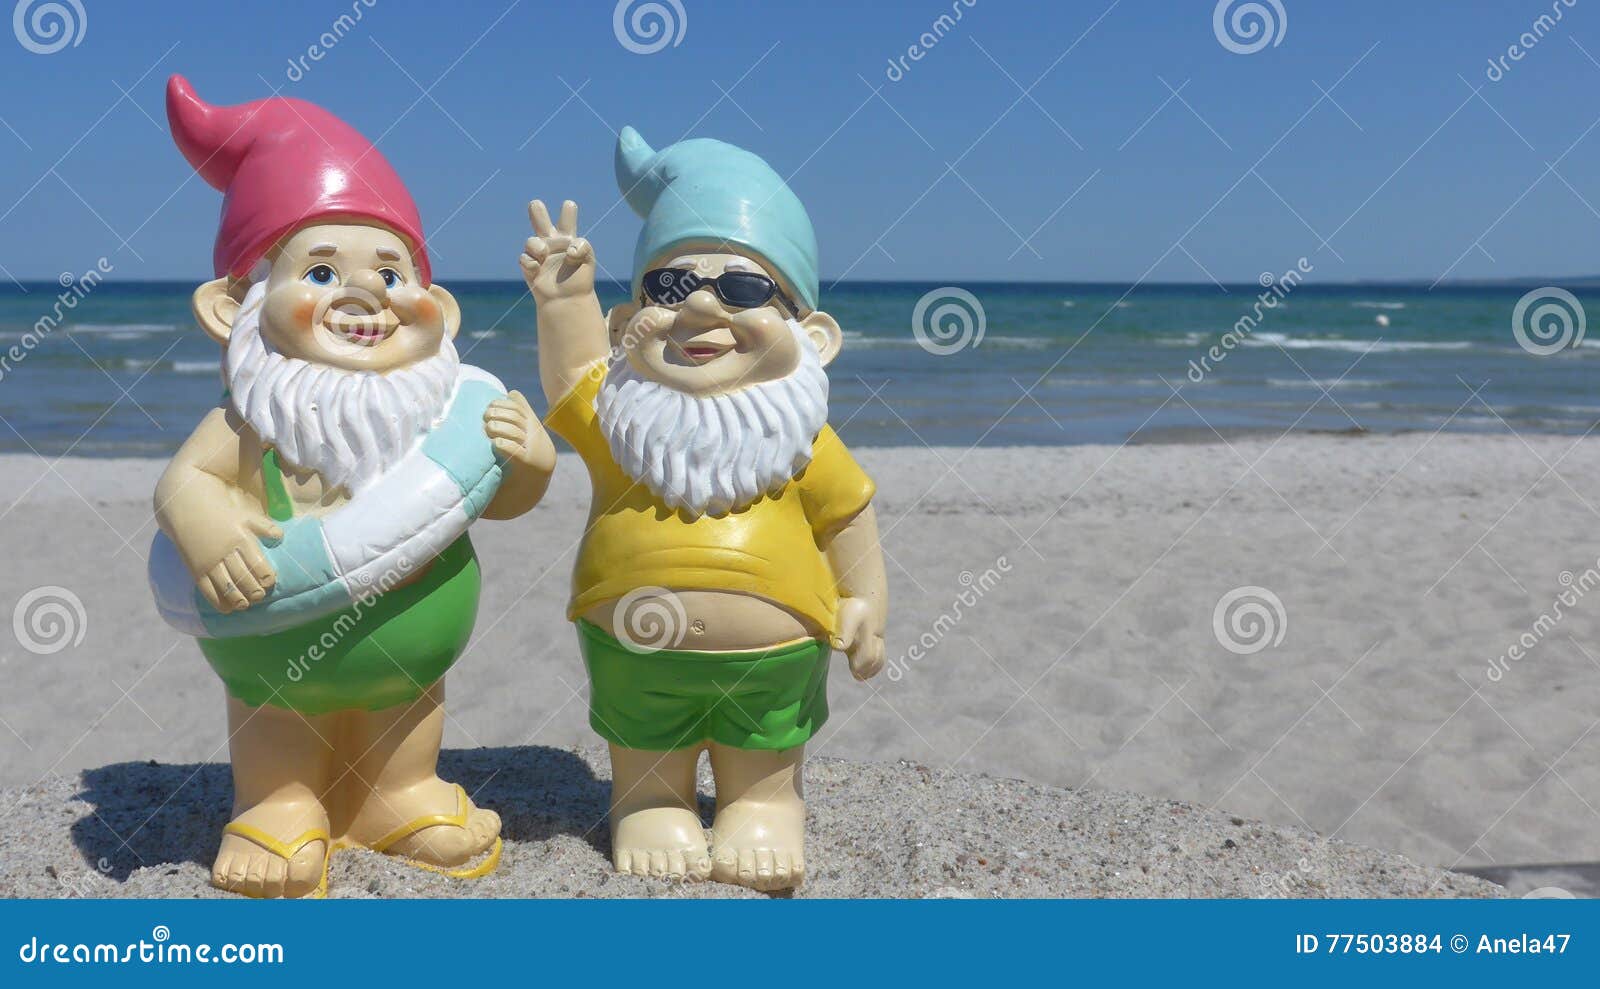 two dwarfs seaside